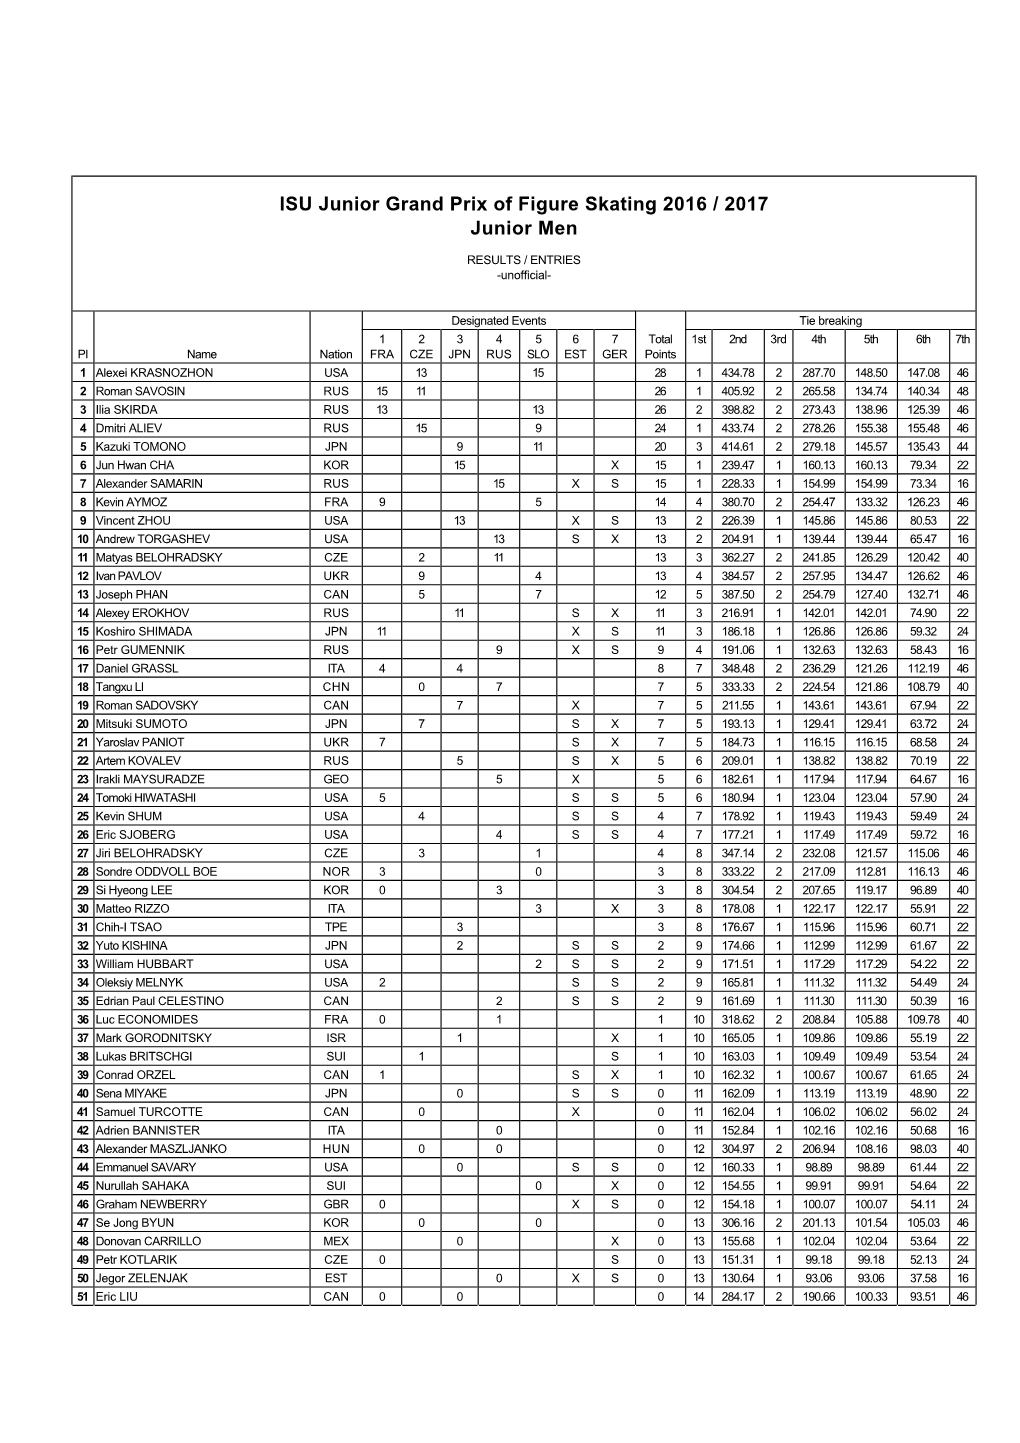 Junior Grand Prix Standings